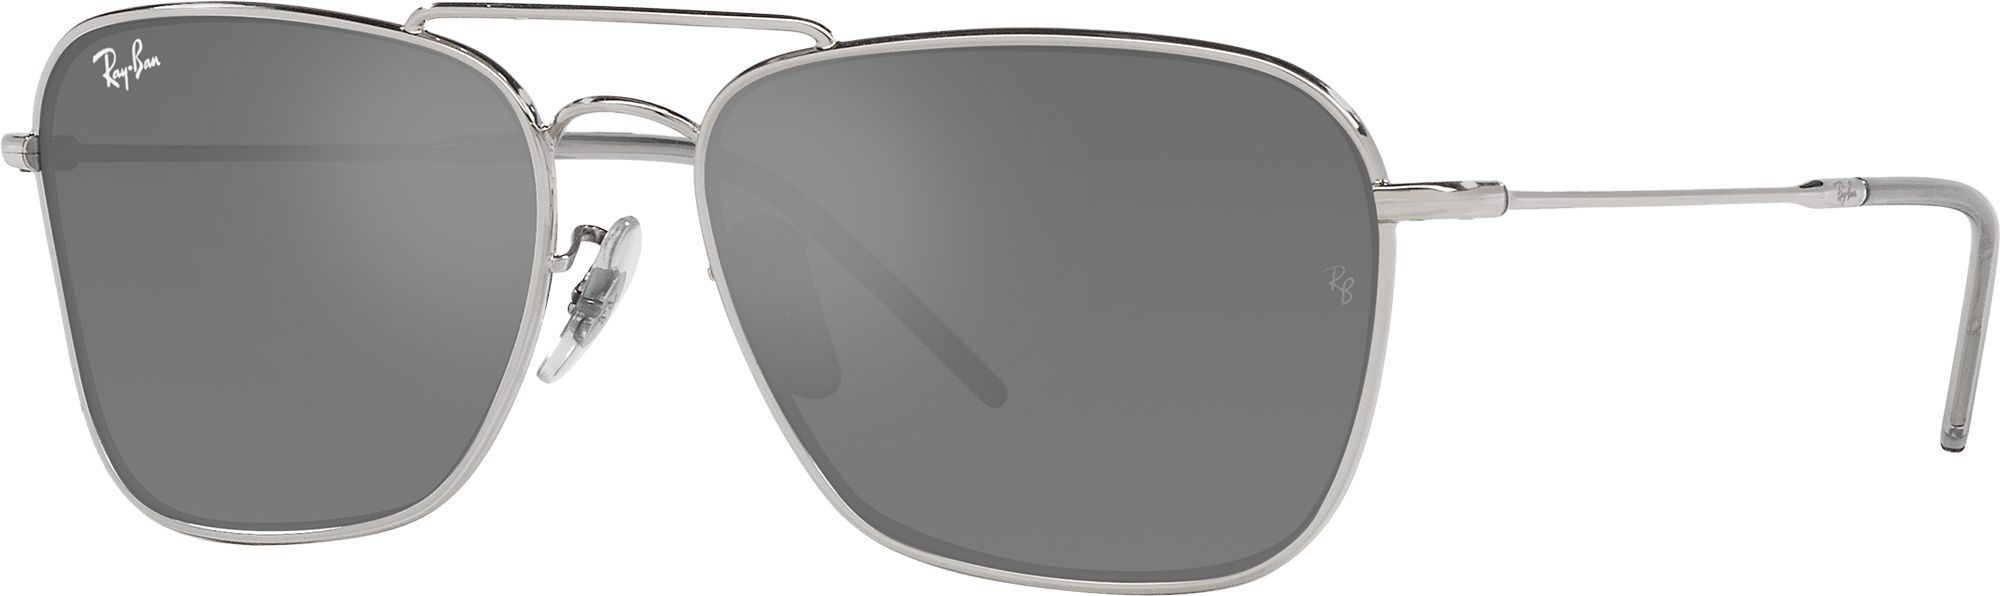 Photos - Sunglasses Ray-Ban Ran-Ban Caravan Reverse , Men's, Silver/grey Mirror Silver 23RYB 